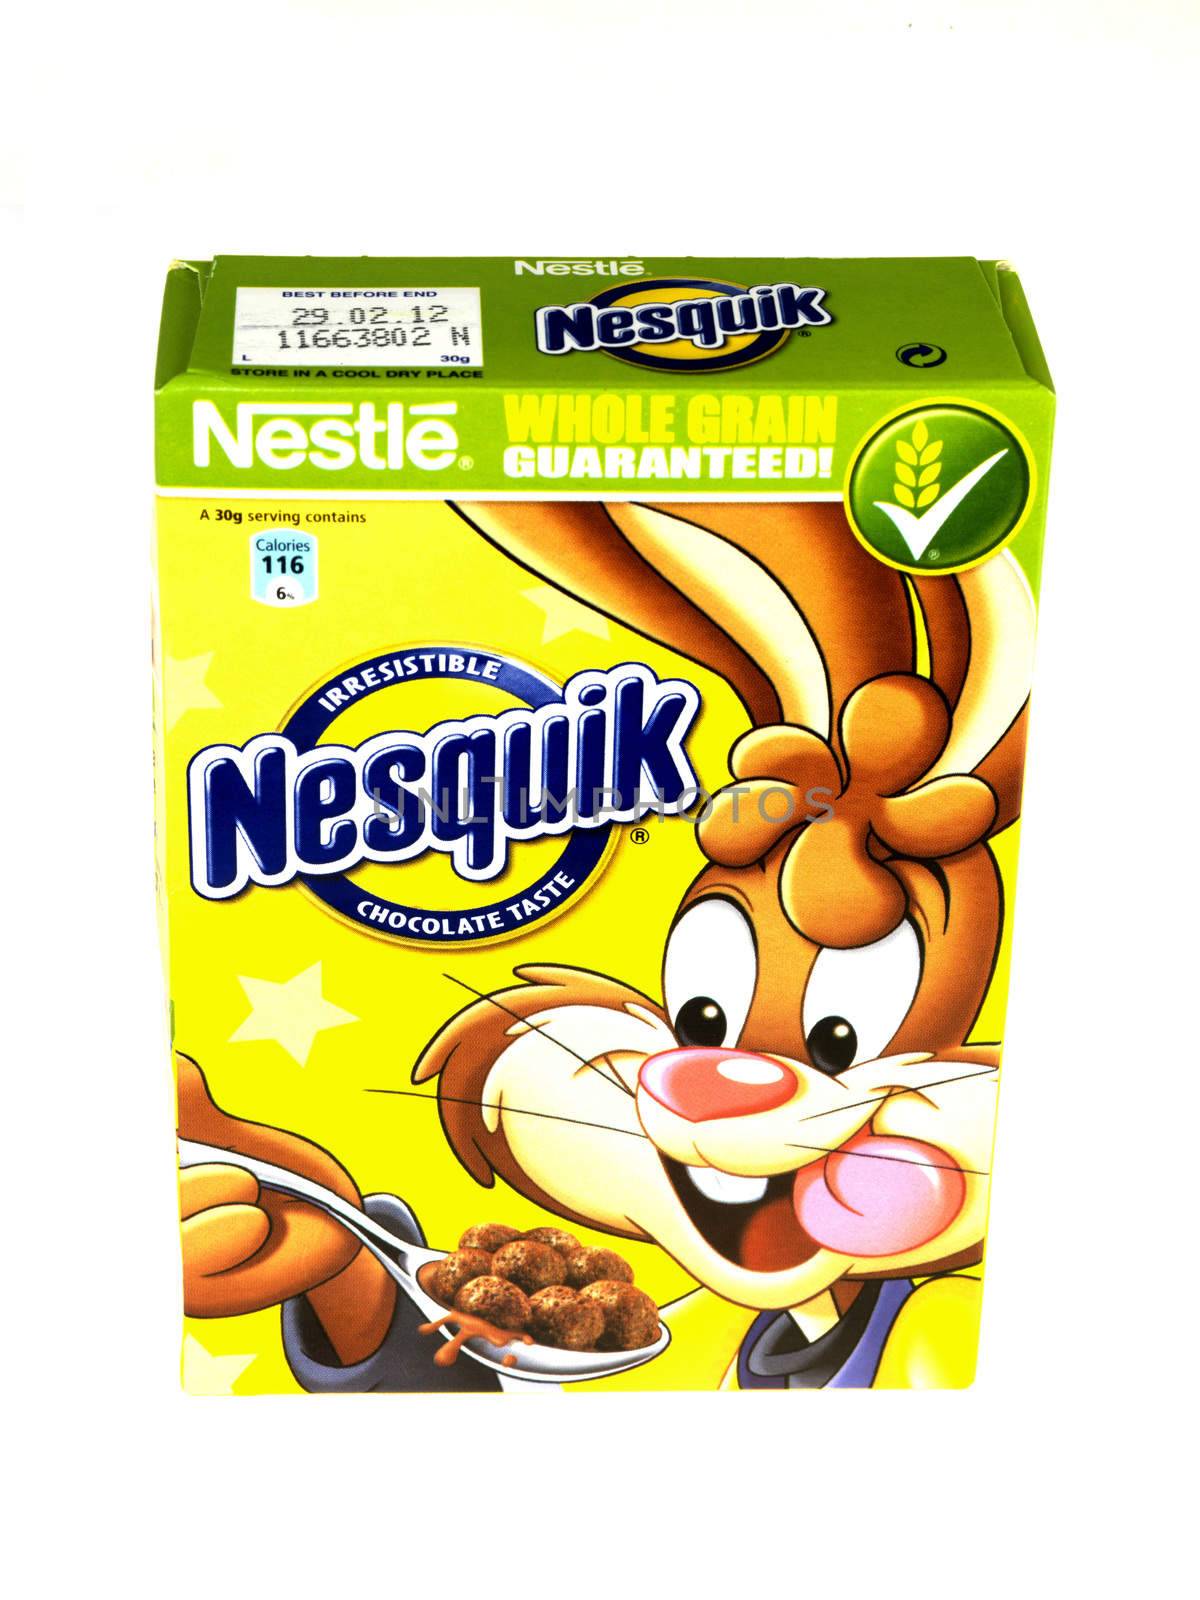 Box of Nesquik Breakfast Cereals